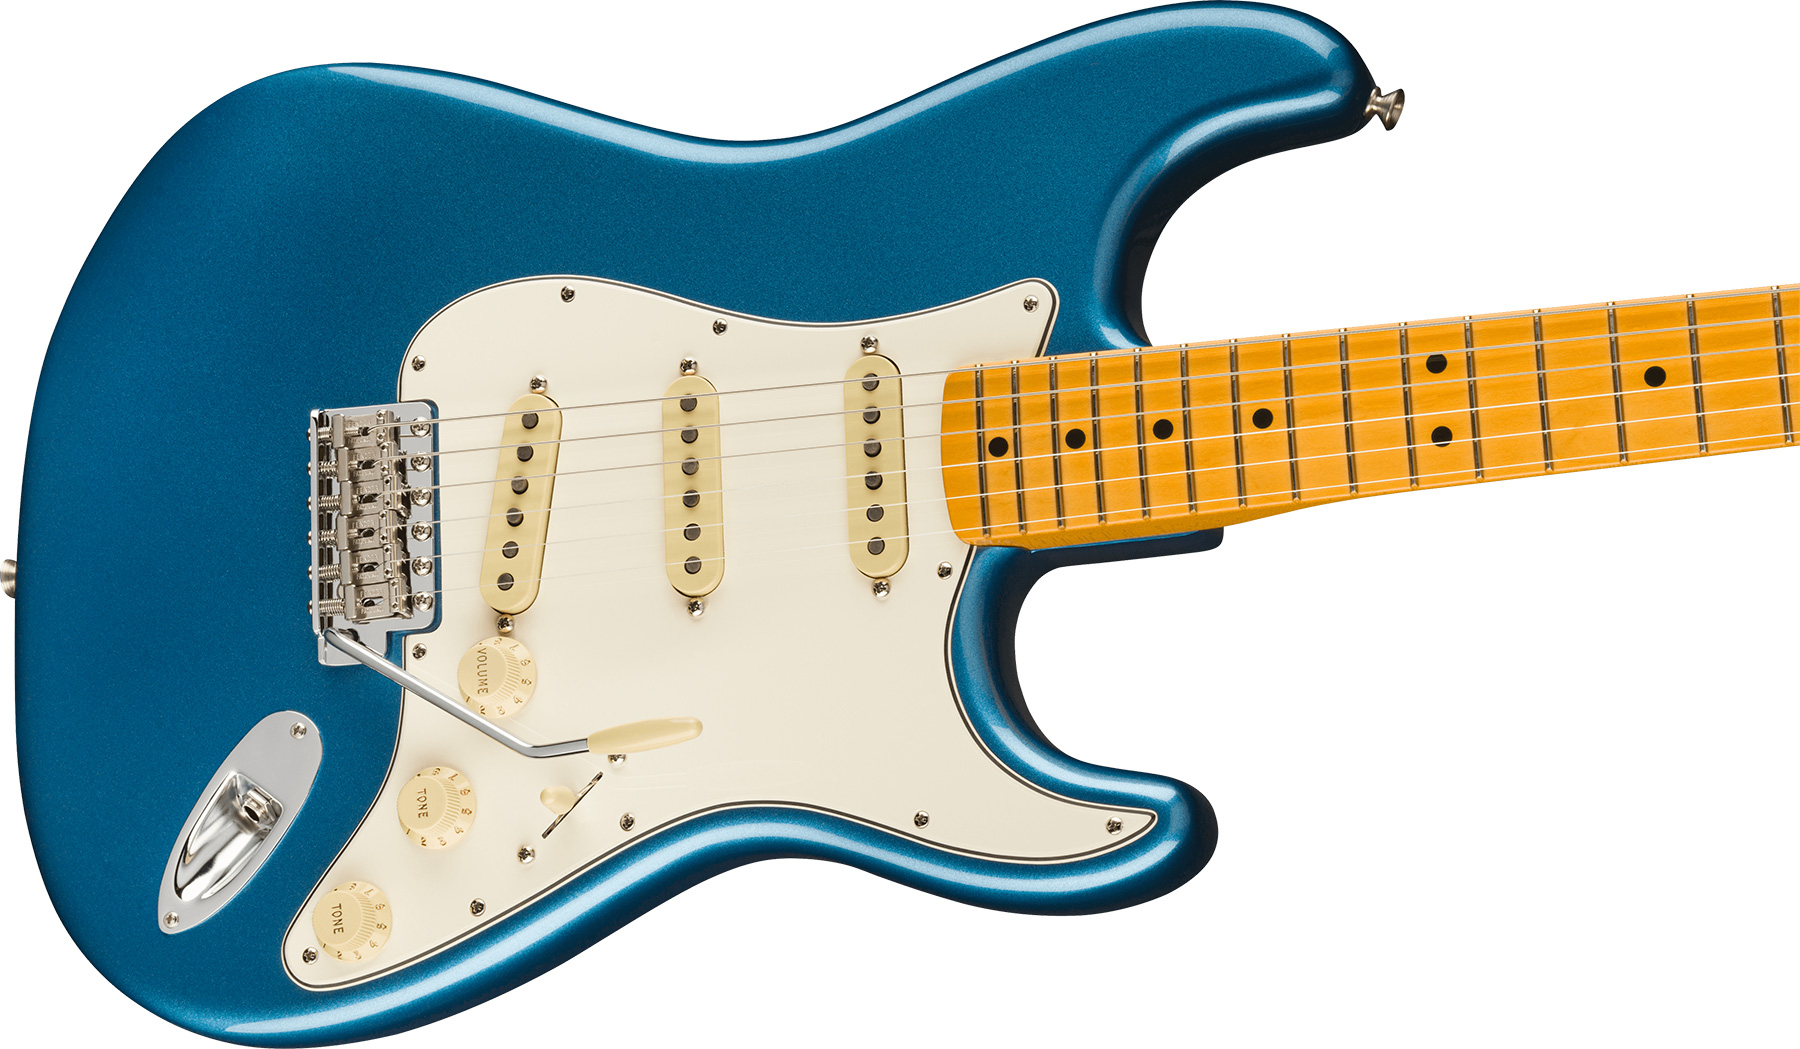 Fender Strat 1973 American Vintage Ii Usa 3s Trem Mn - Lake Placid Blue - Elektrische gitaar in Str-vorm - Variation 2